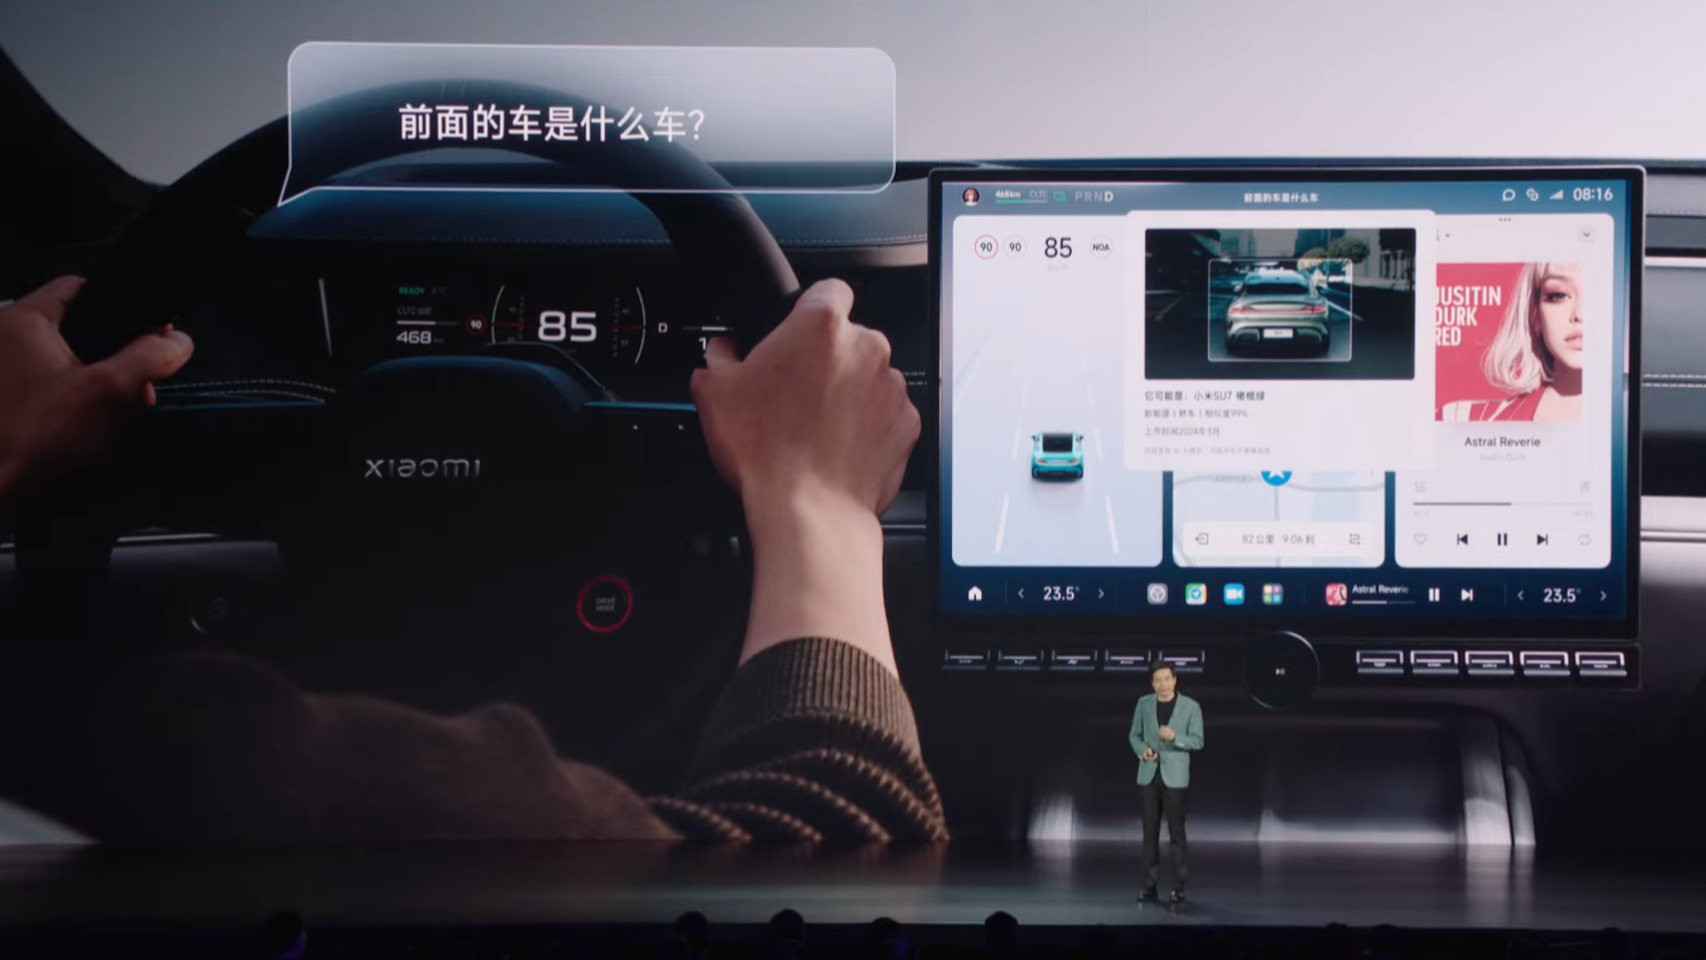 La IA de Xiaomi es capaz de reconocer coches en la carretera y dar información de los sitios que visitamos